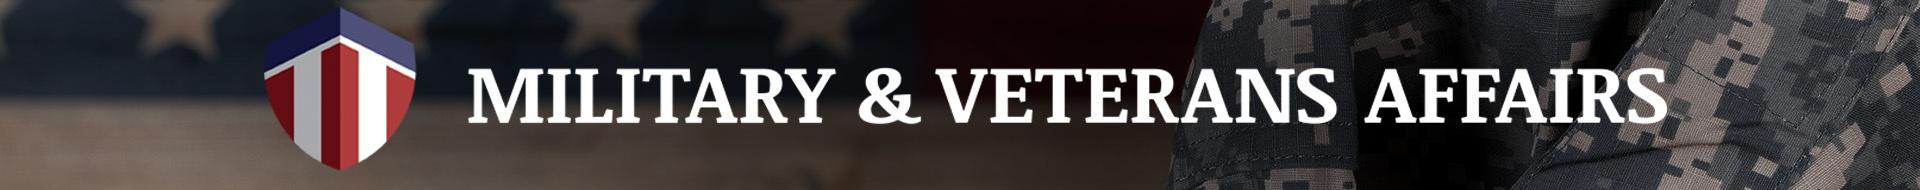 Veterans at UNC-TV Logo Banner